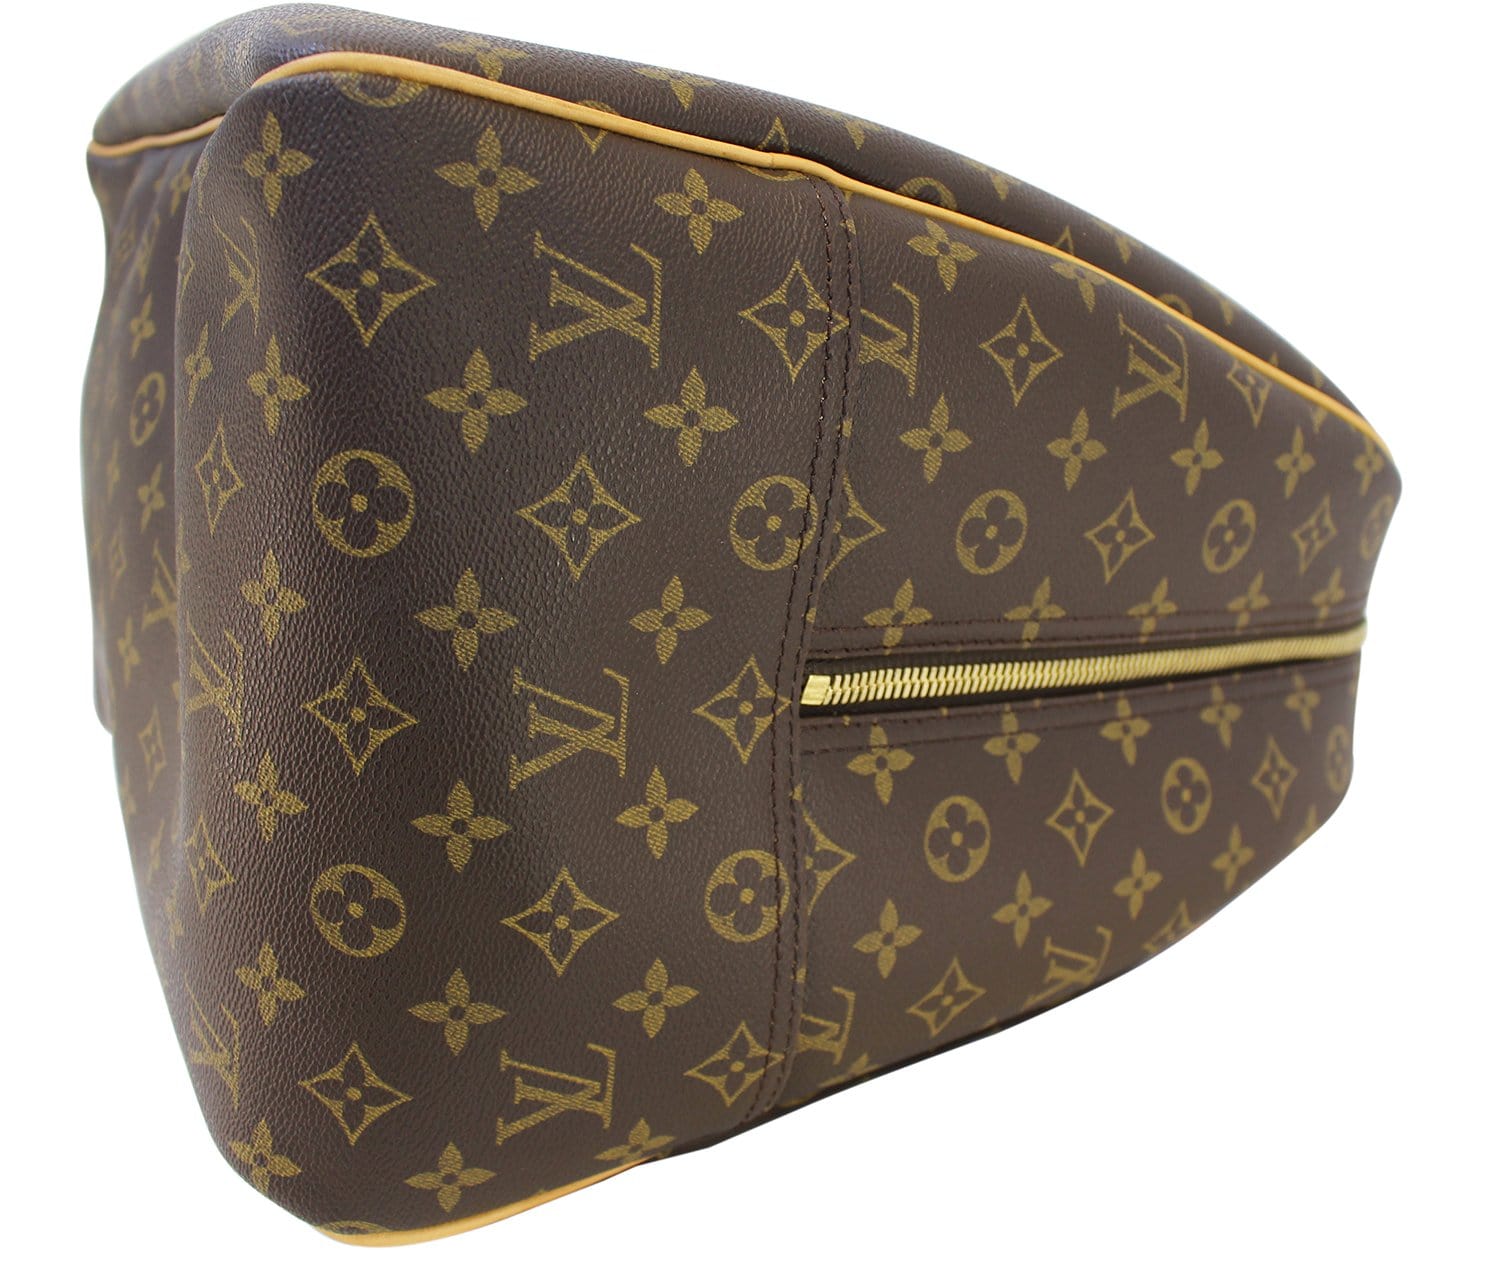 Louis Vuitton Evasion Boston Bag Travel Bag Monogram Brown Vintage